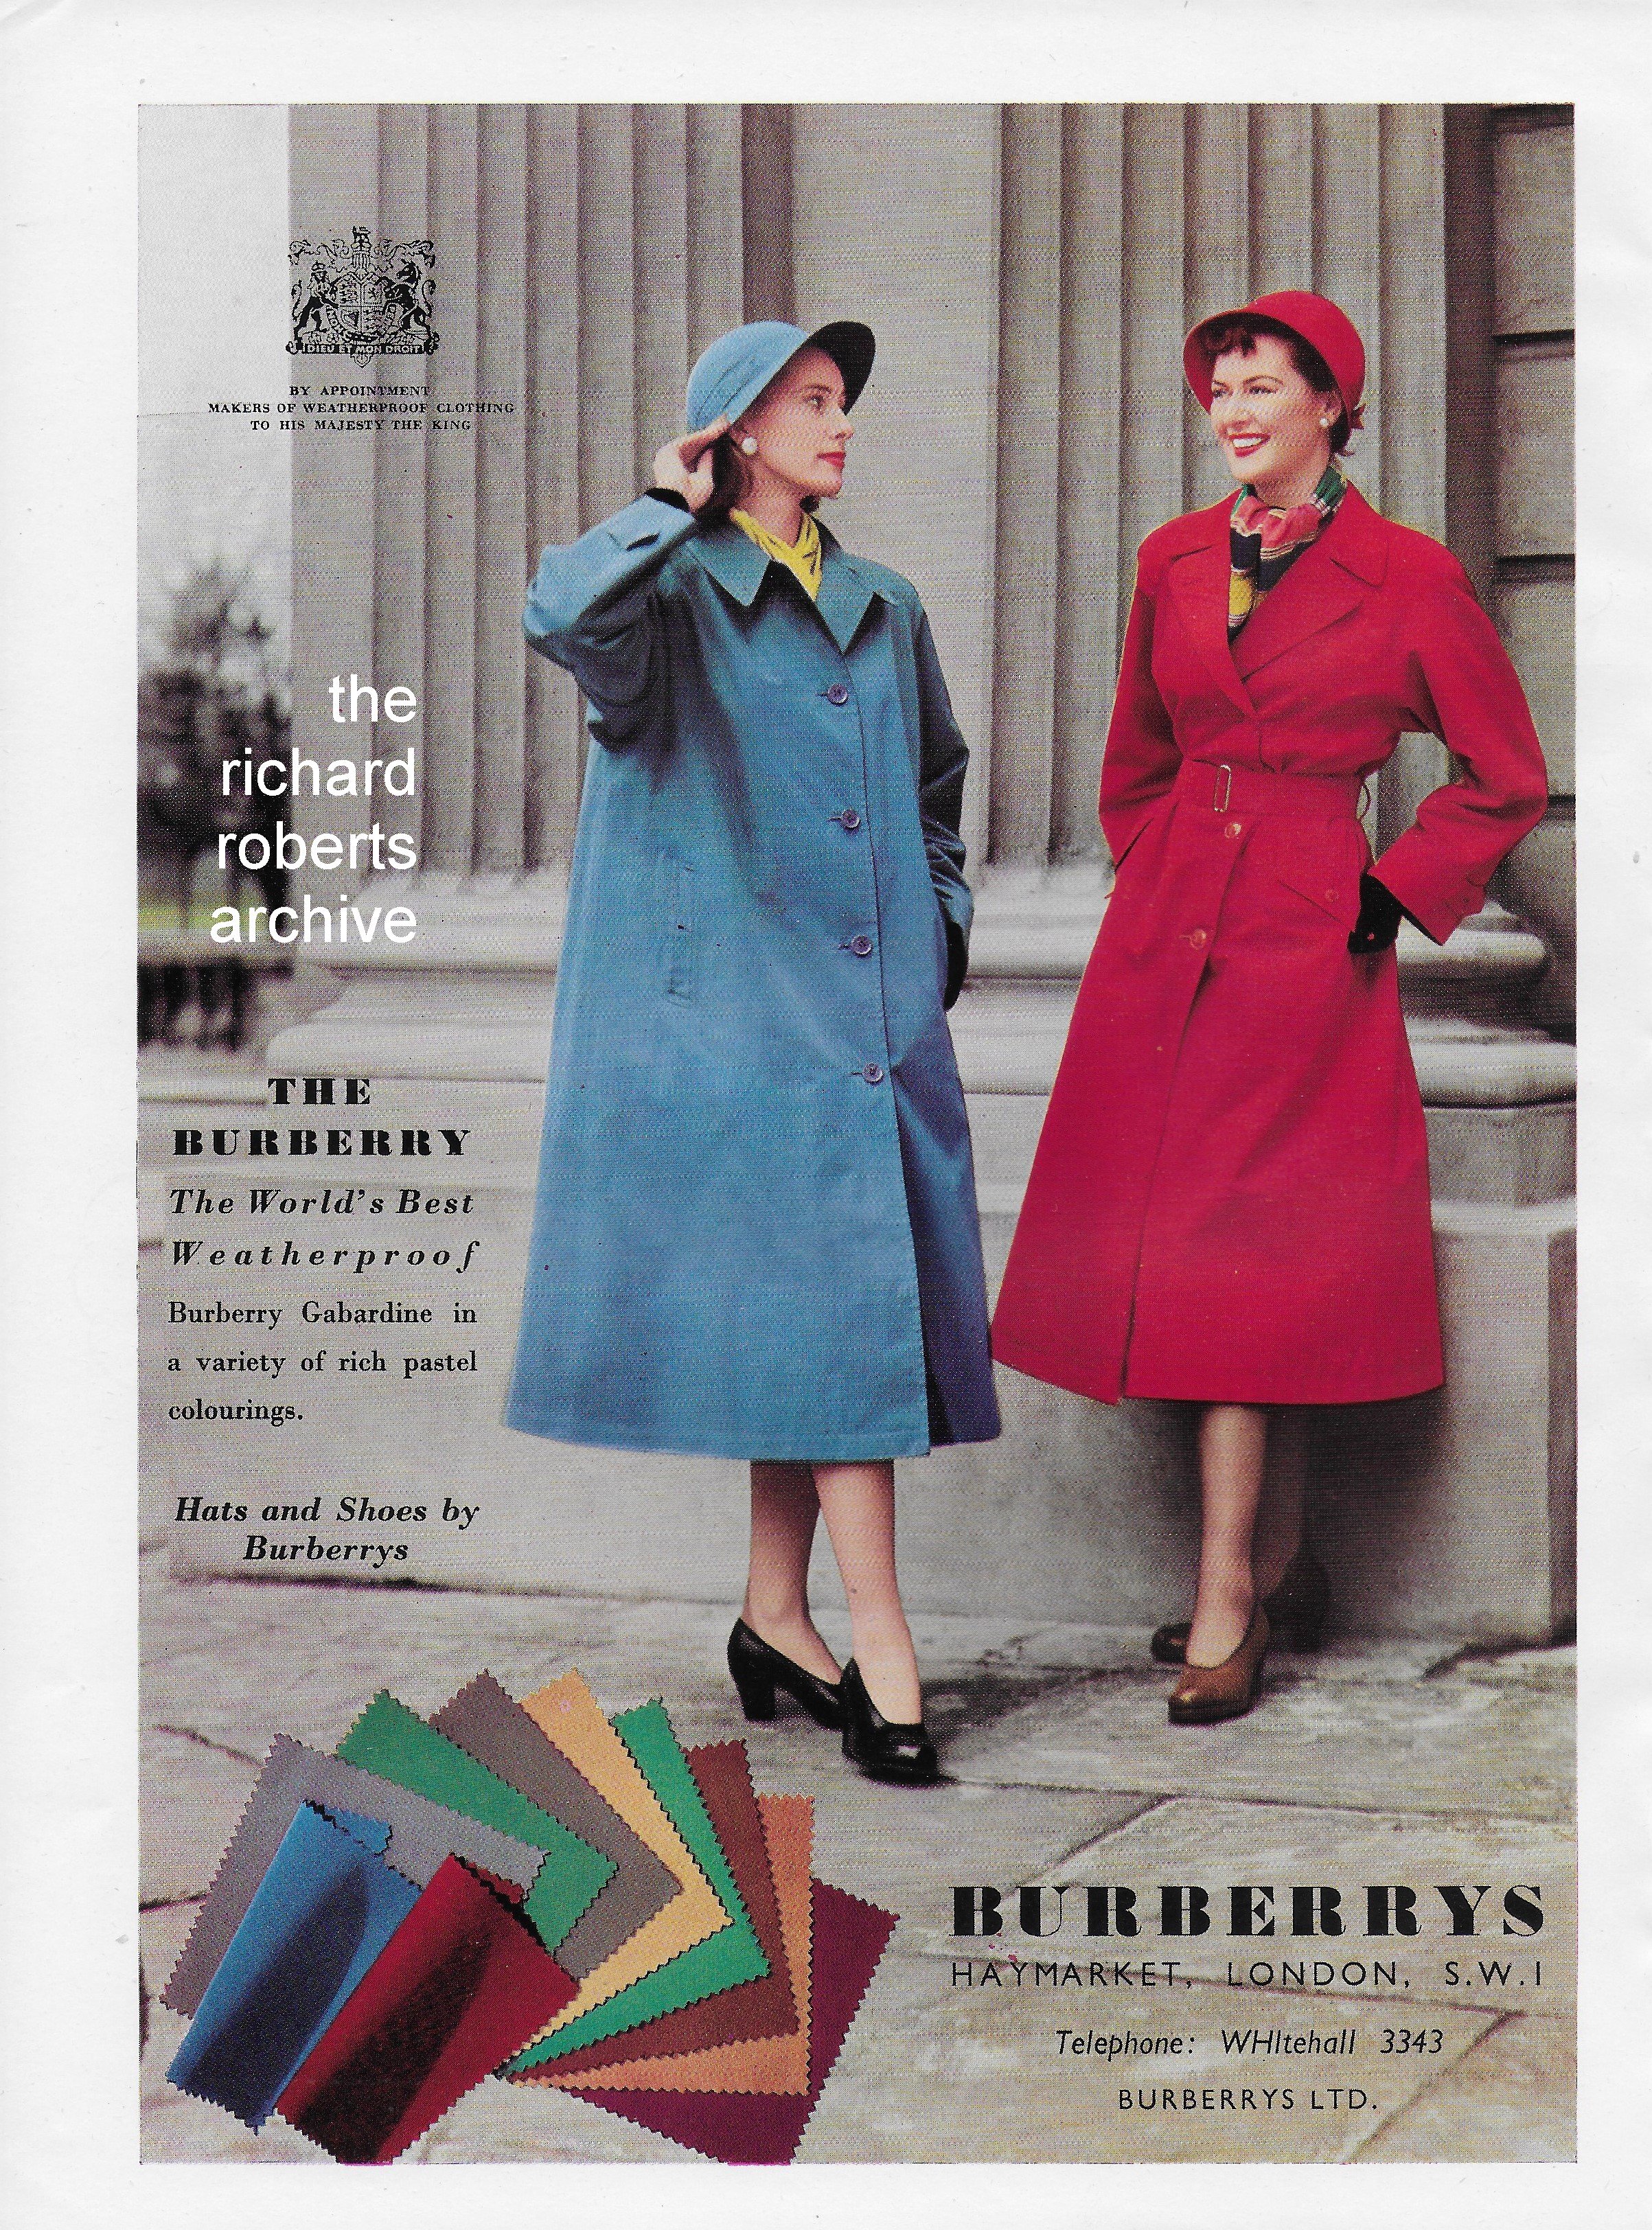 Verwaand optocht Daarbij History of Burberry Advertising — The Richard Roberts Archive